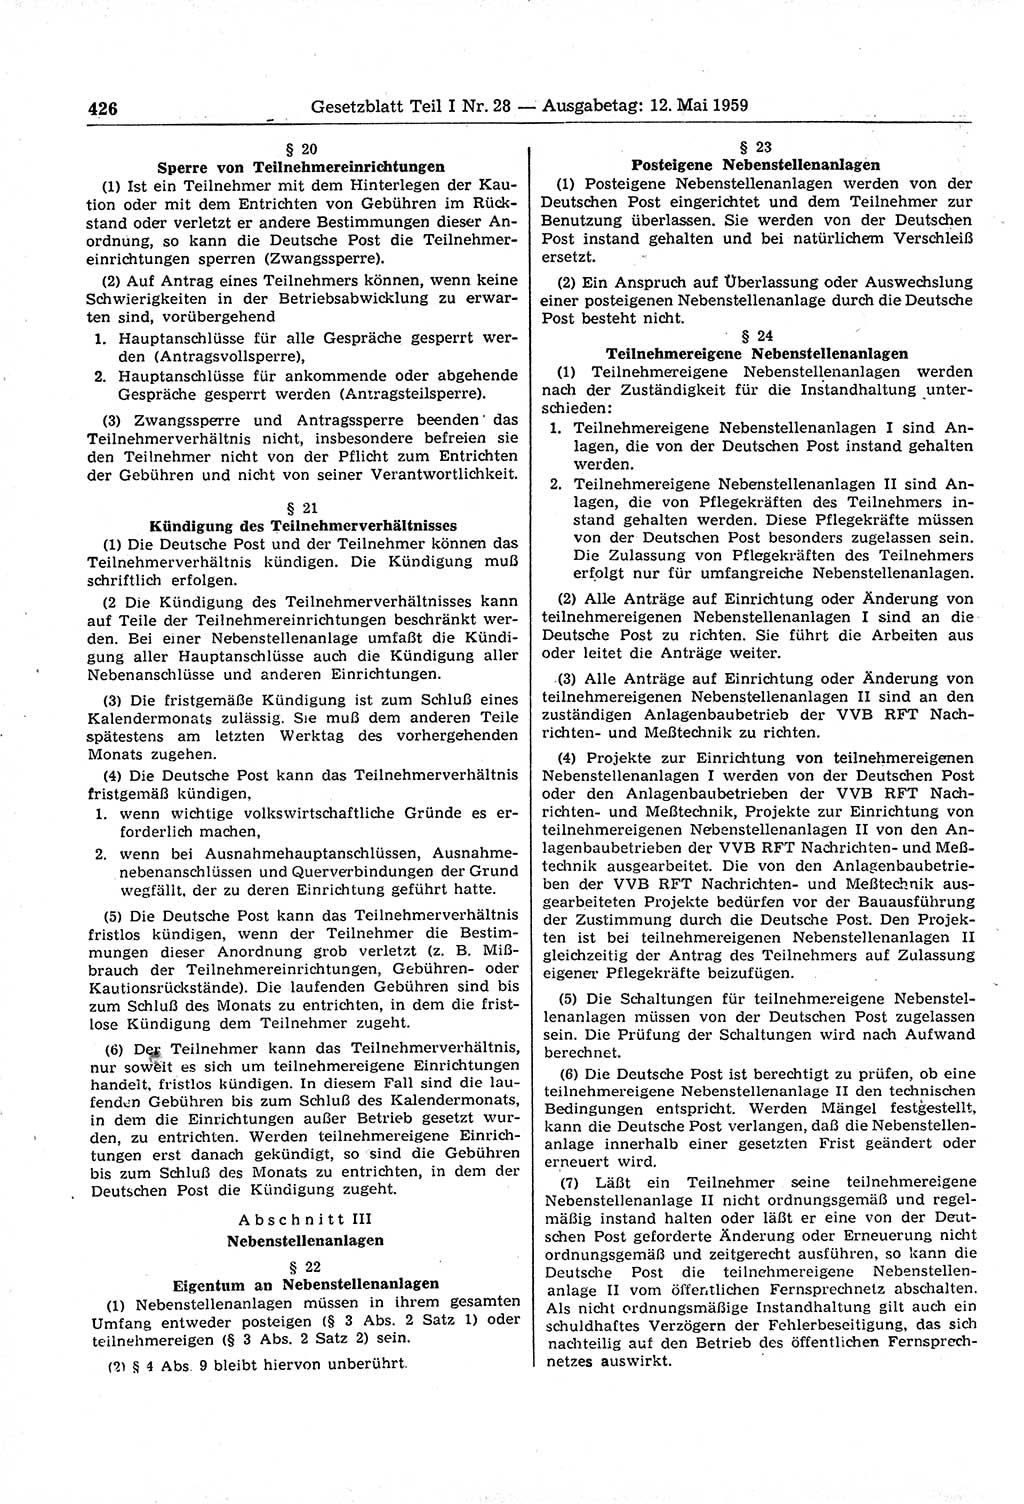 Gesetzblatt (GBl.) der Deutschen Demokratischen Republik (DDR) Teil Ⅰ 1959, Seite 426 (GBl. DDR Ⅰ 1959, S. 426)